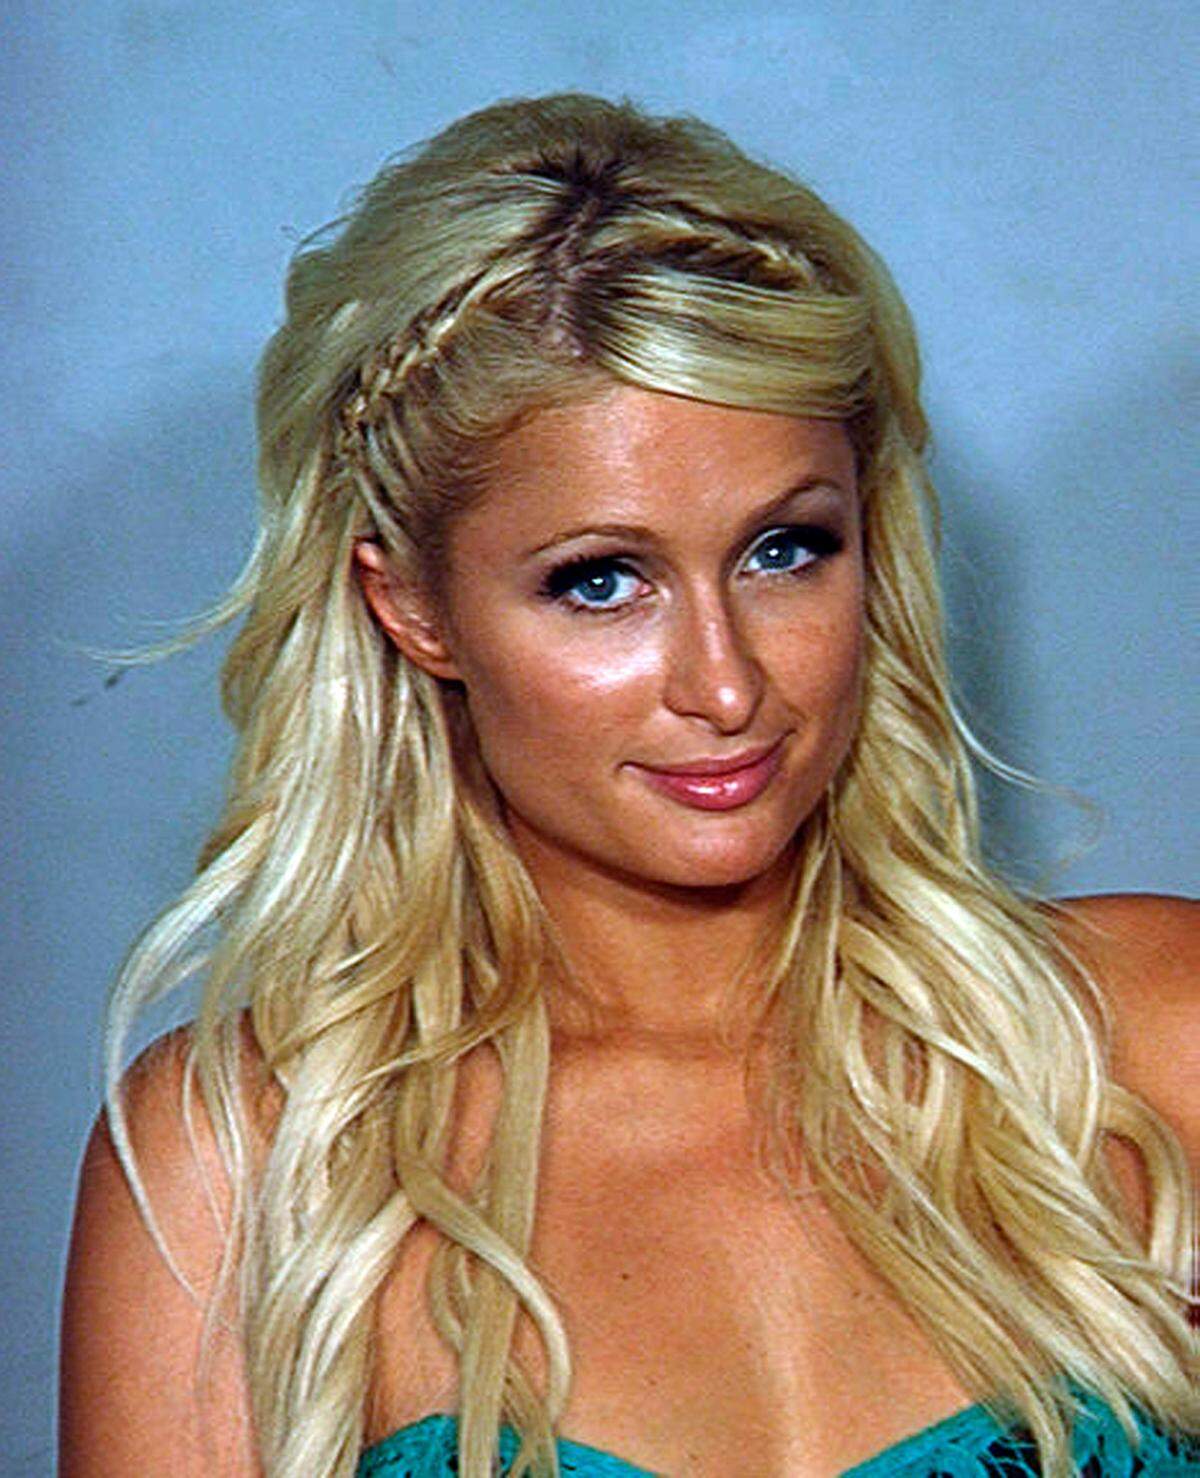 Berufserbin Paris Hilton wurde am 27. August wegen Kokainbesitzes in Las Vegas festgenommen. Es war nicht ihr erster Kontakt mit der Exekutive. Aber ...